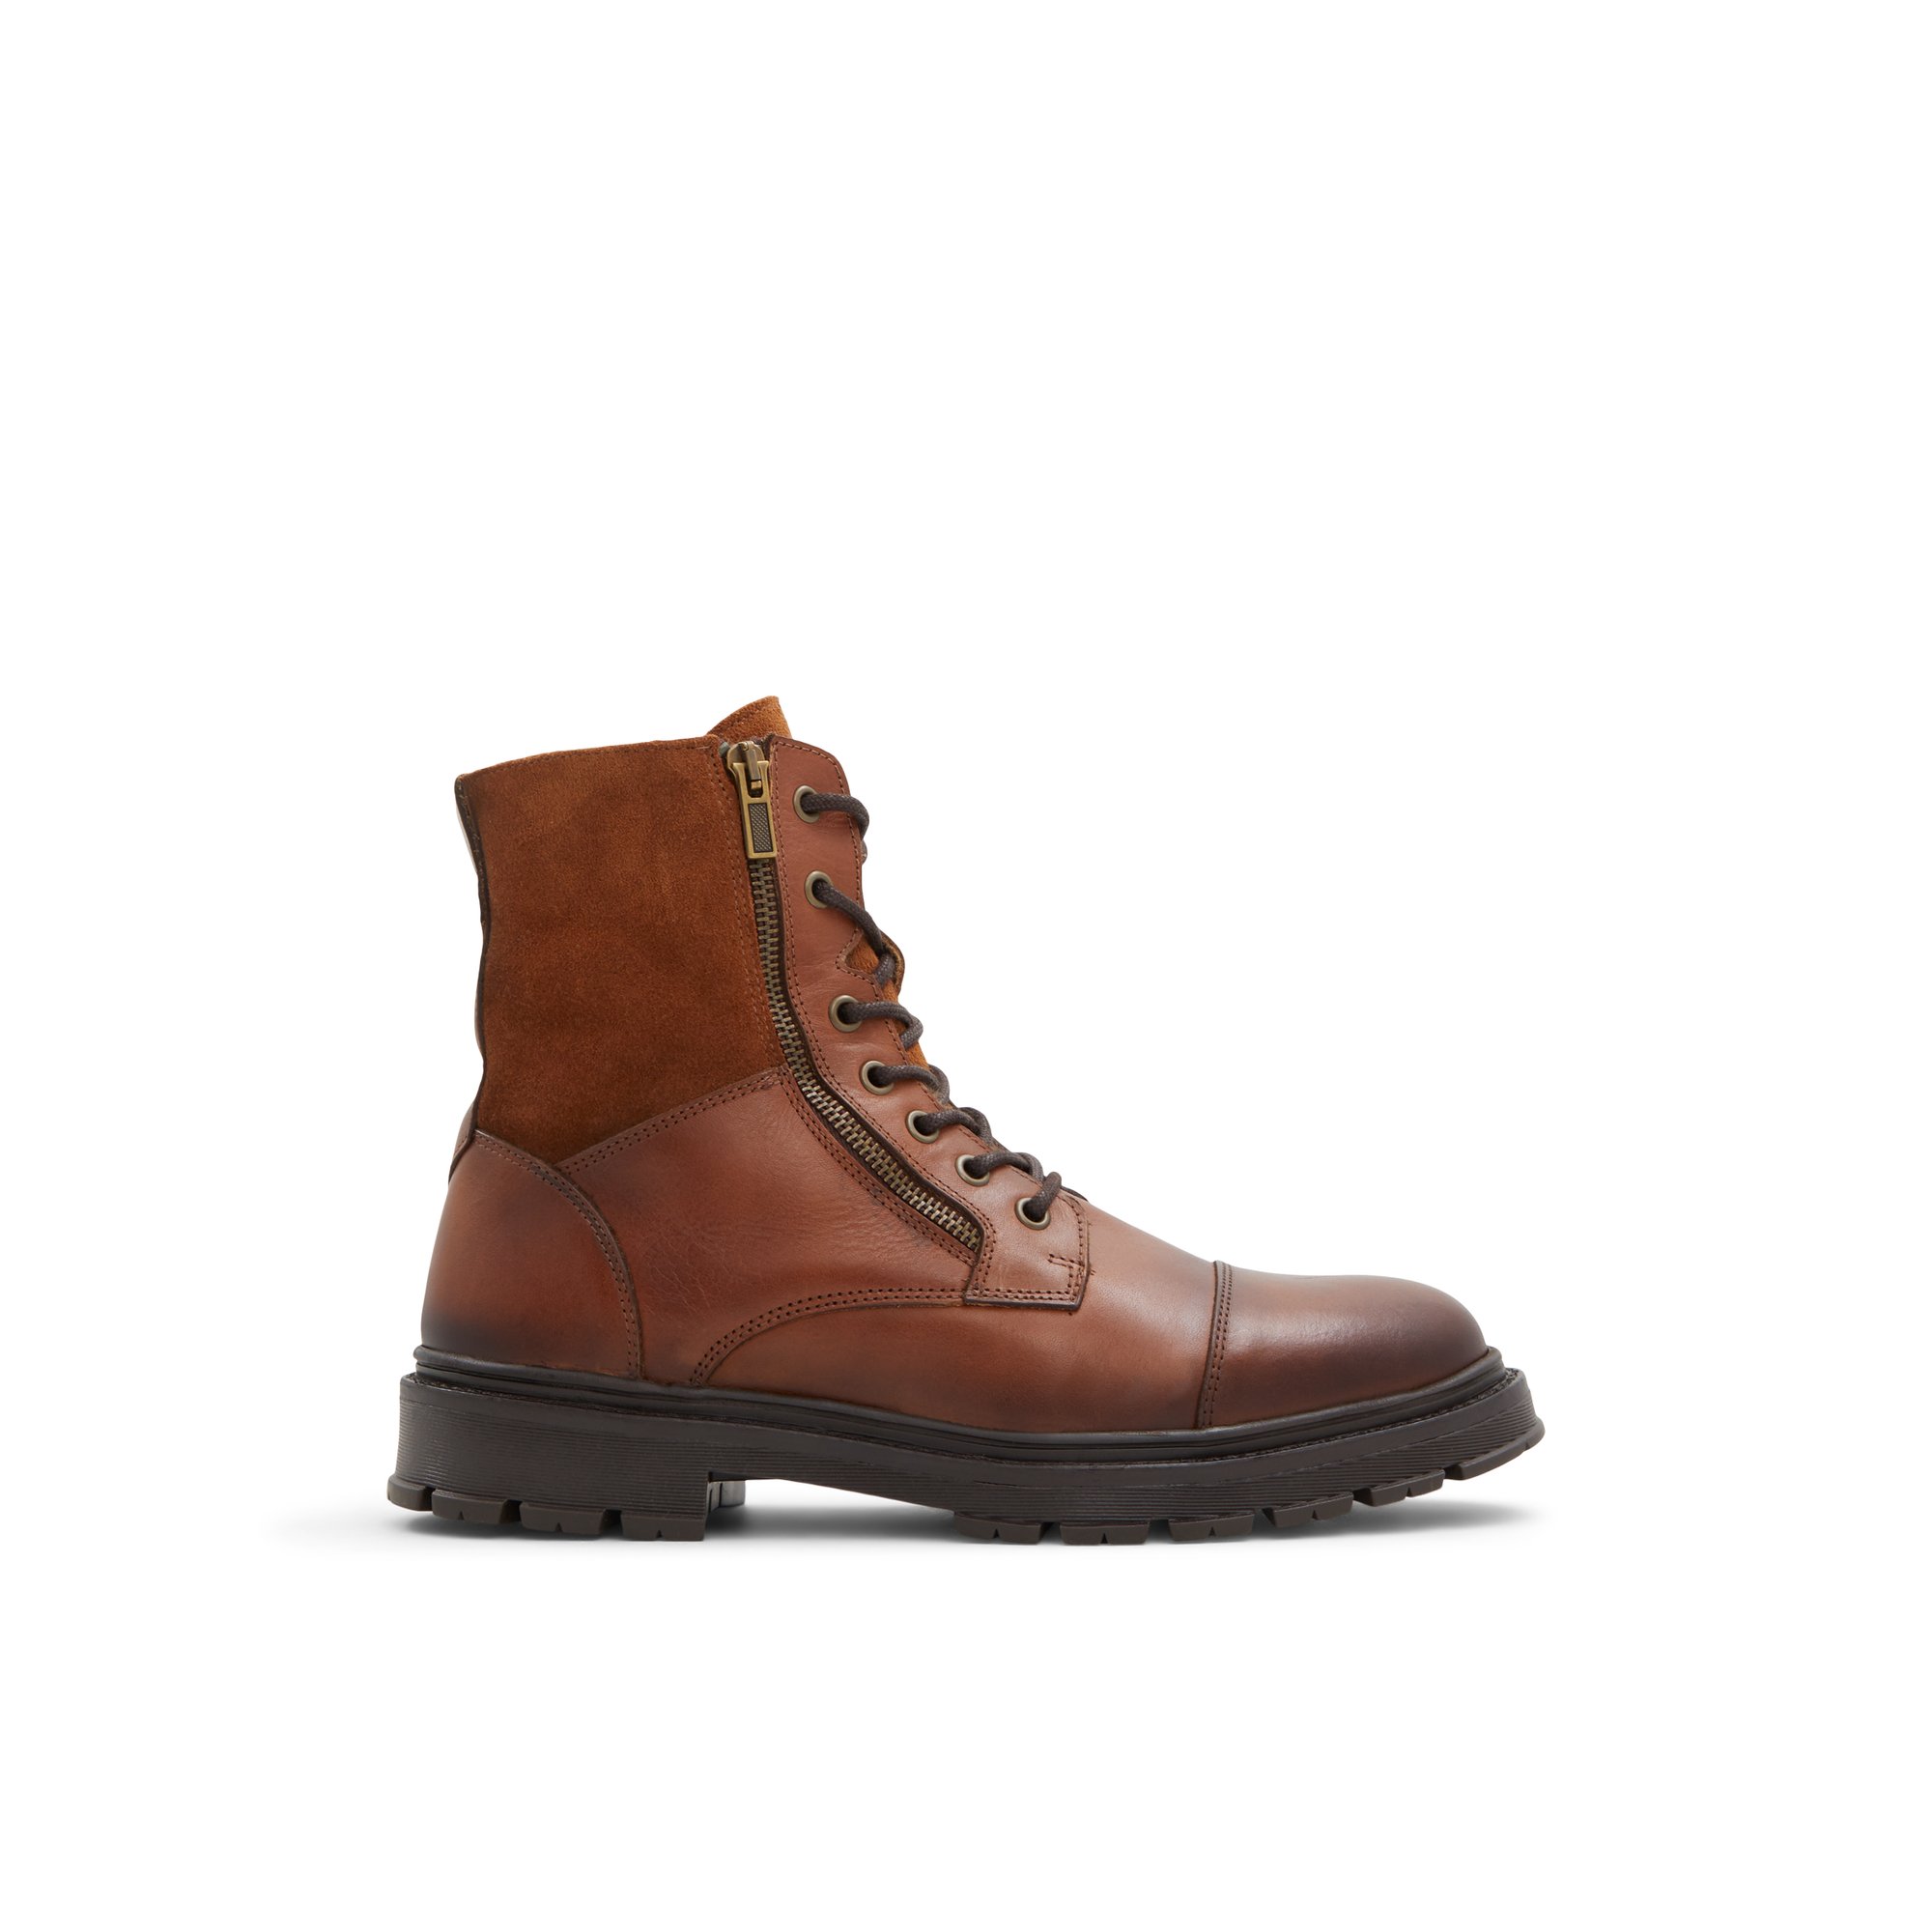 ALDO Aaren-l - Men's Winter Boot - Brown